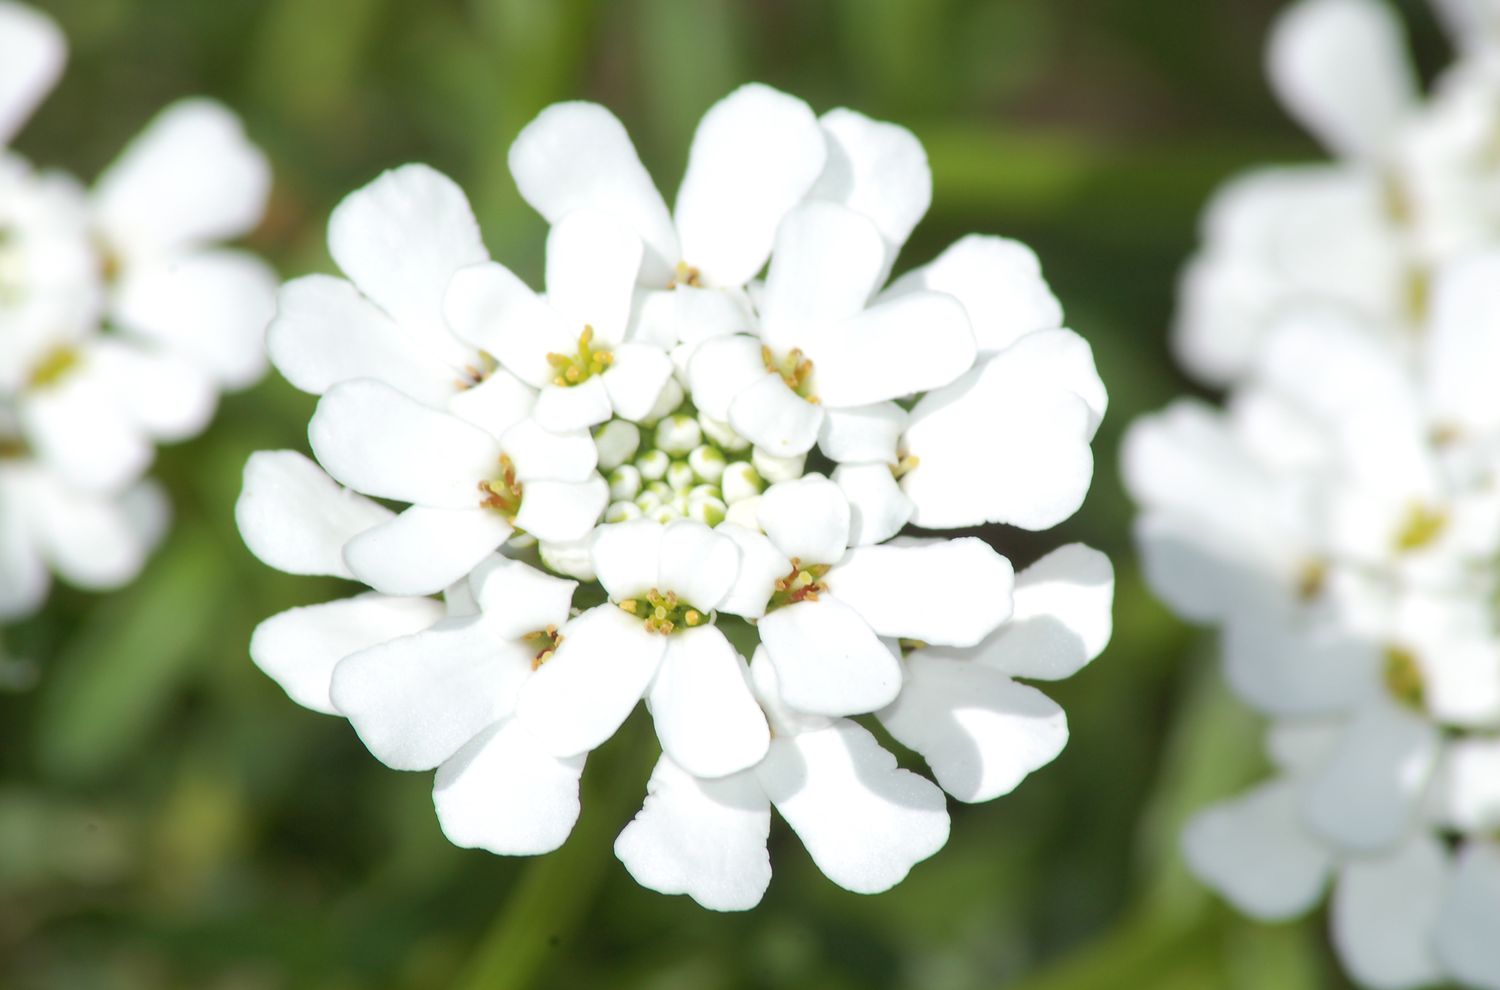 La floración de Candytuft (imagen) tiene un interesante patrón de pétalos. Es una planta perenne de color blanco